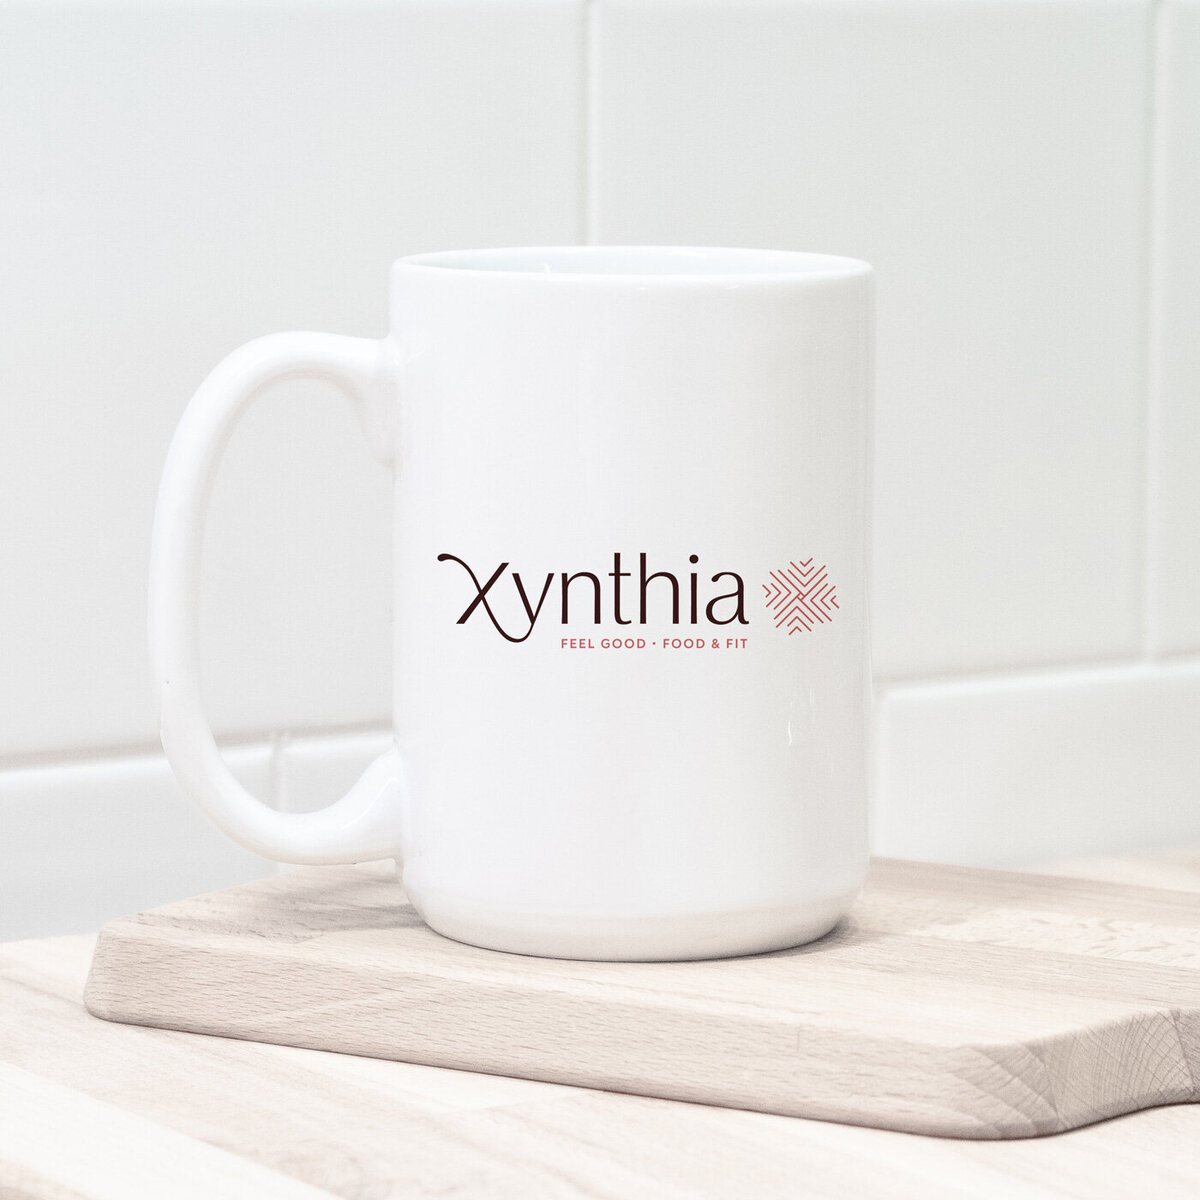 xynthia dietician logo on a coffee mug